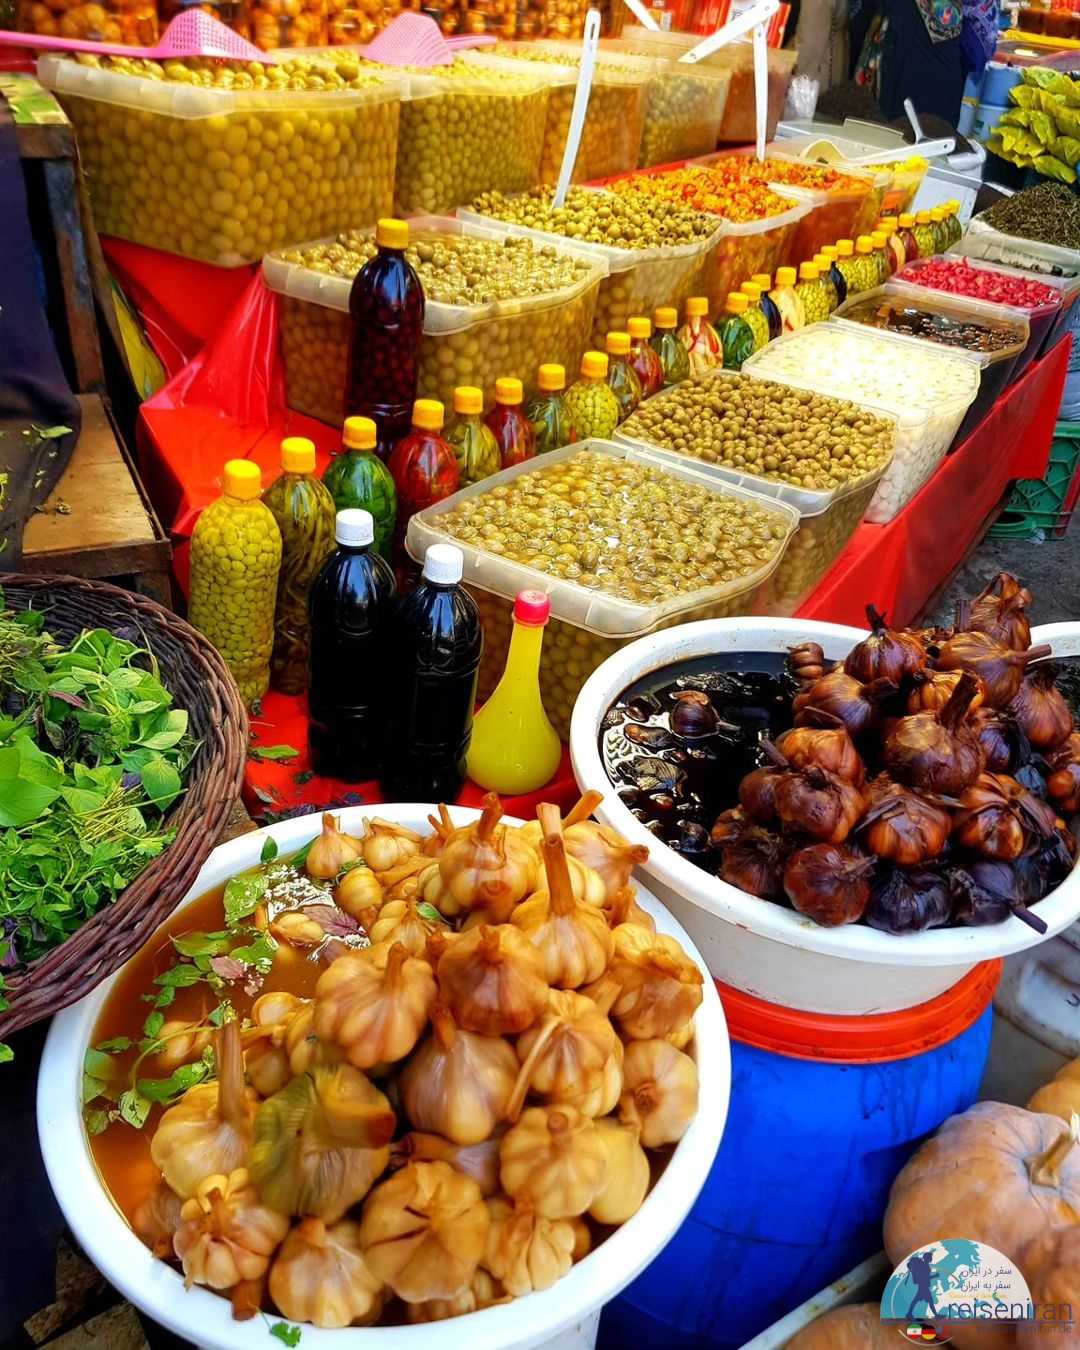 سوغات شمال در بازار محمودآباد